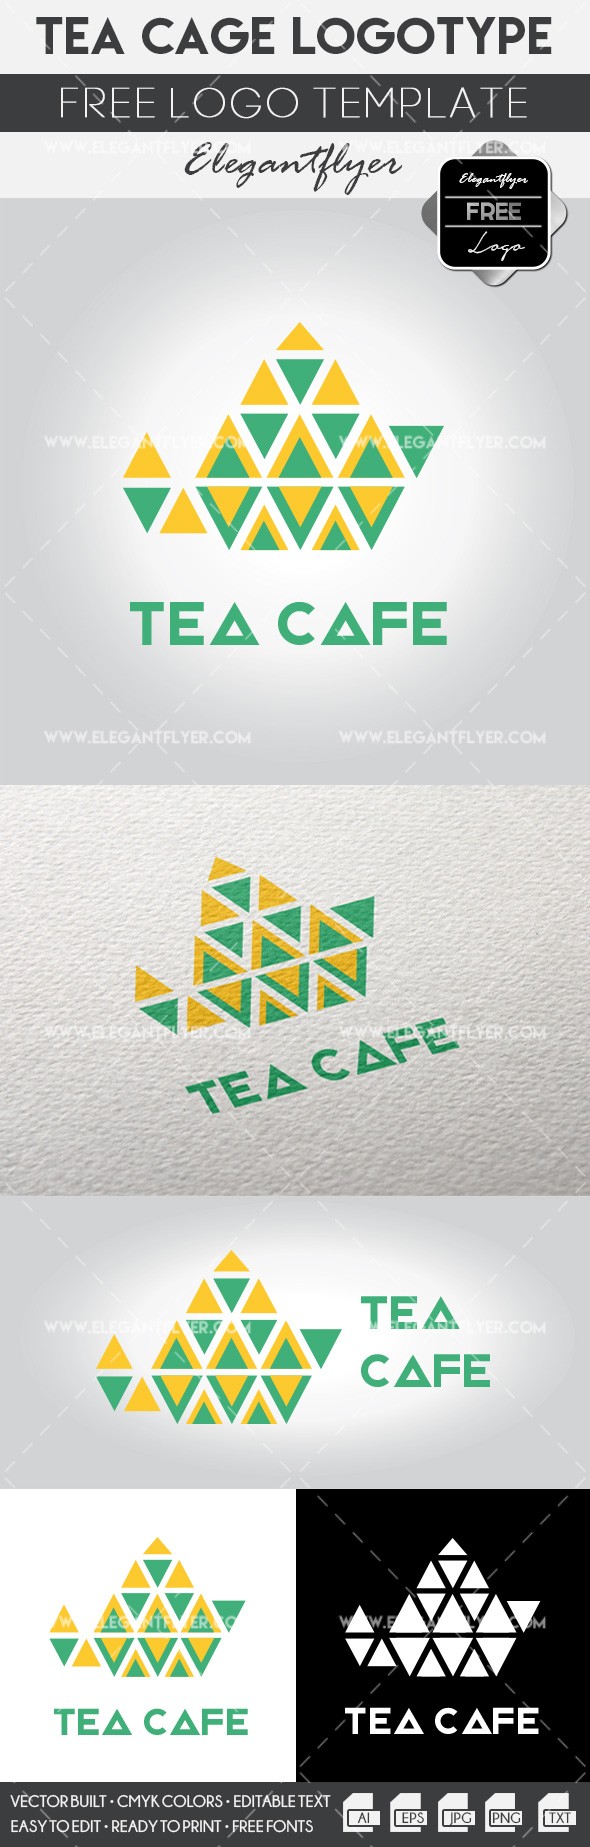 Tea cafe by ElegantFlyer